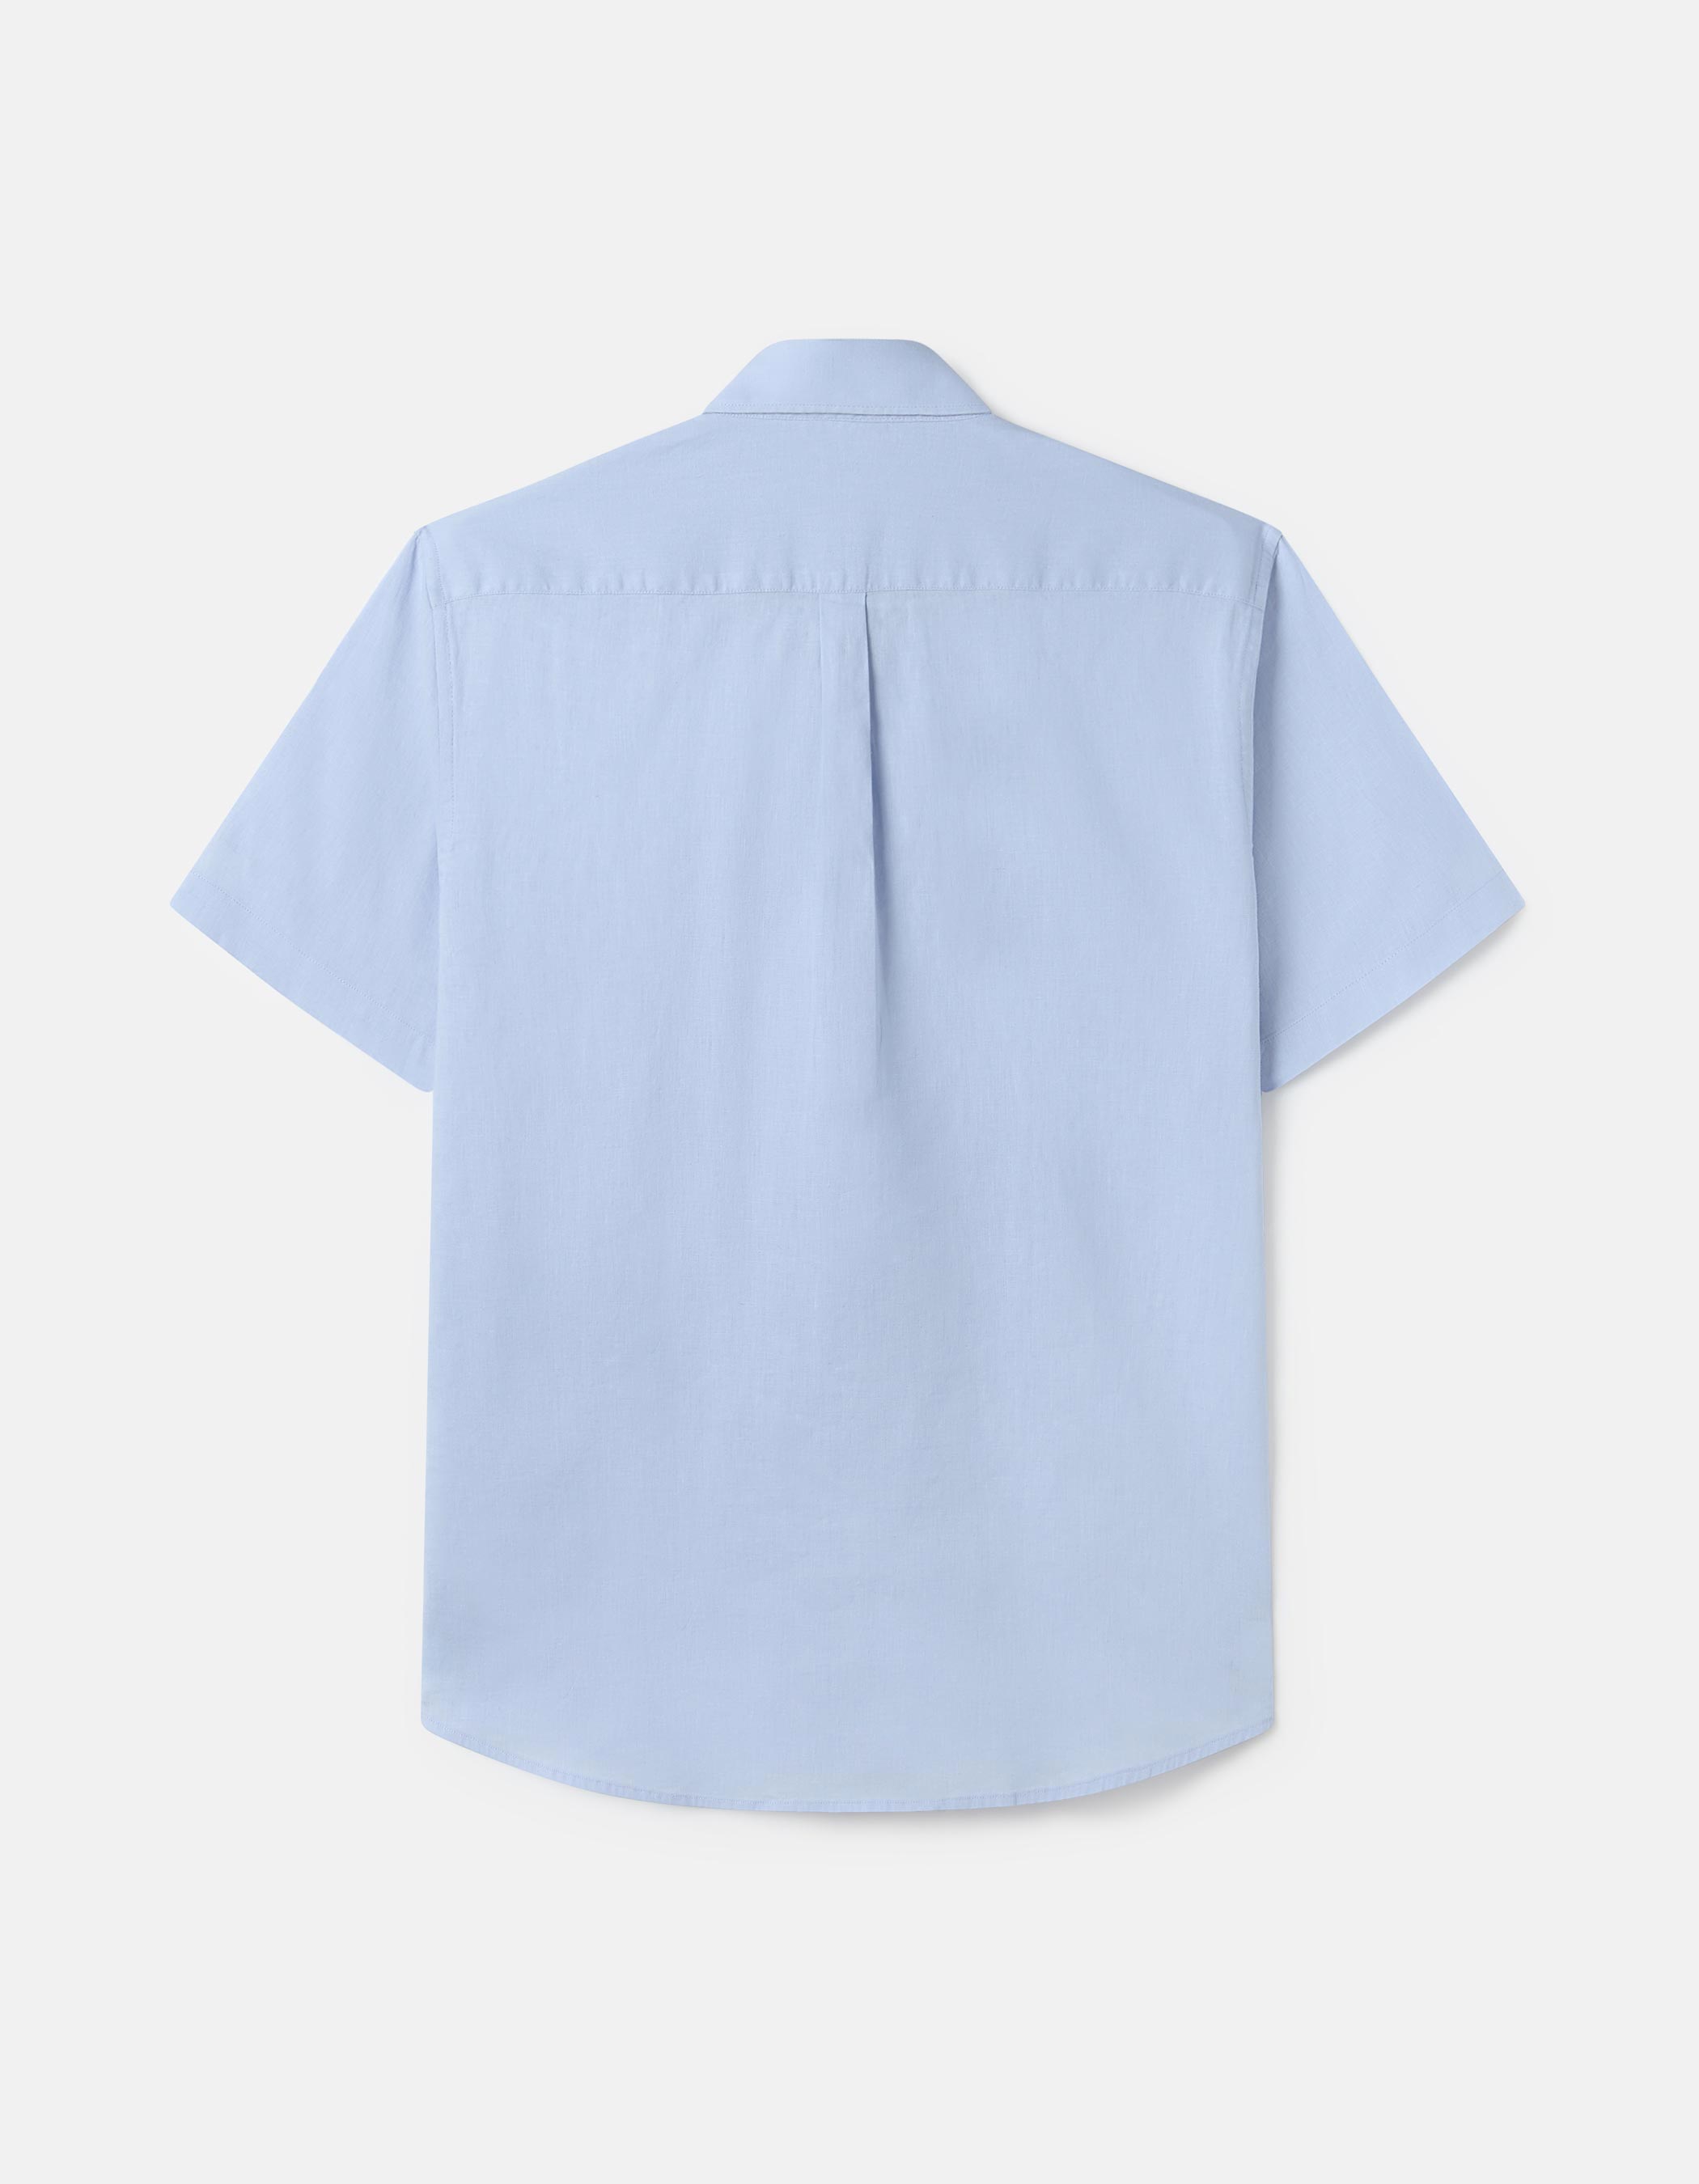 Linen and cotton short sleeve shirt. 1